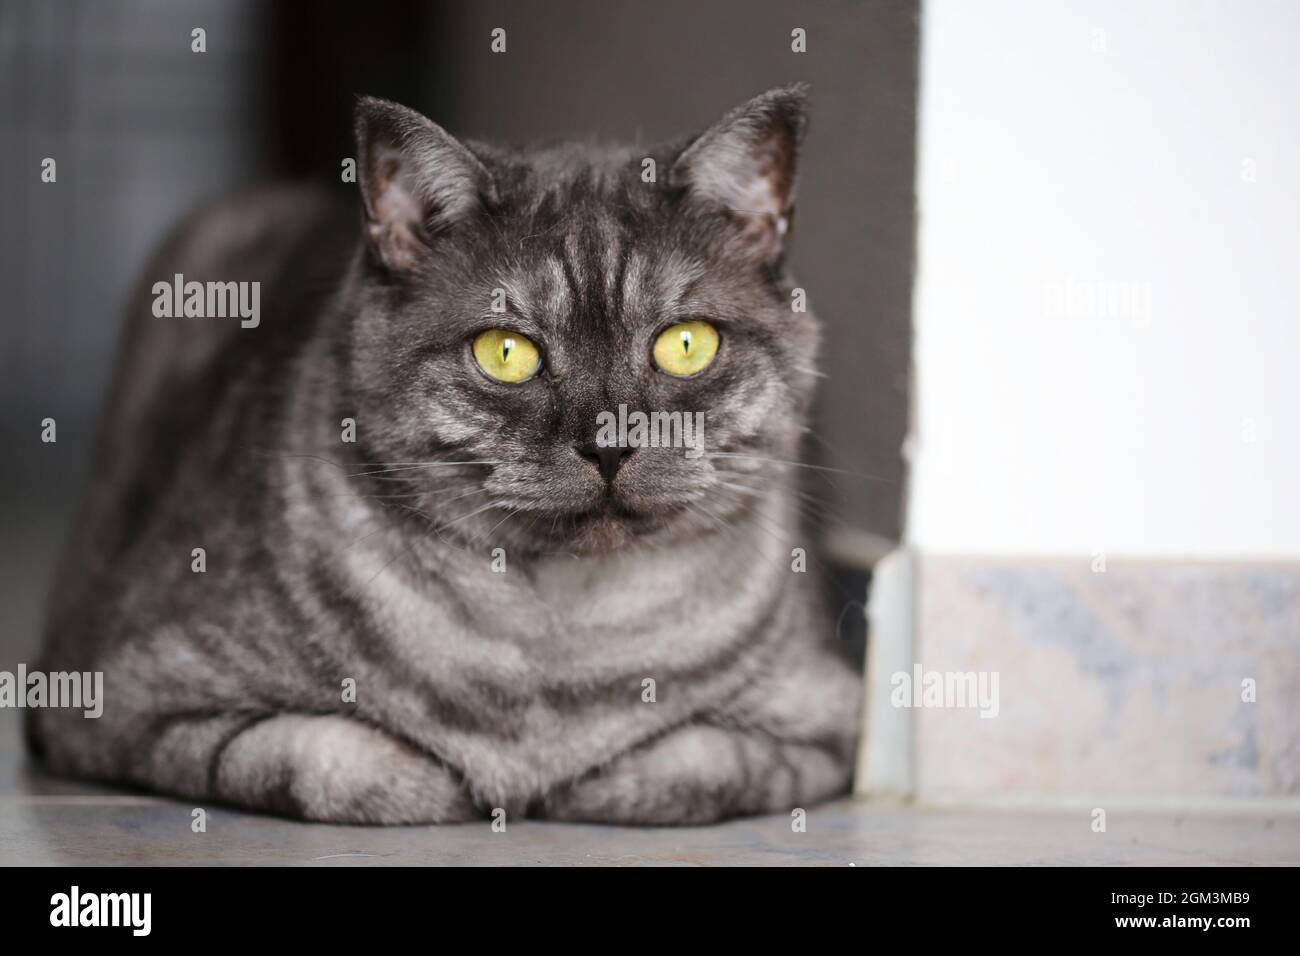 Black Tabby Smoke British Shorthair Cat Stock Photo